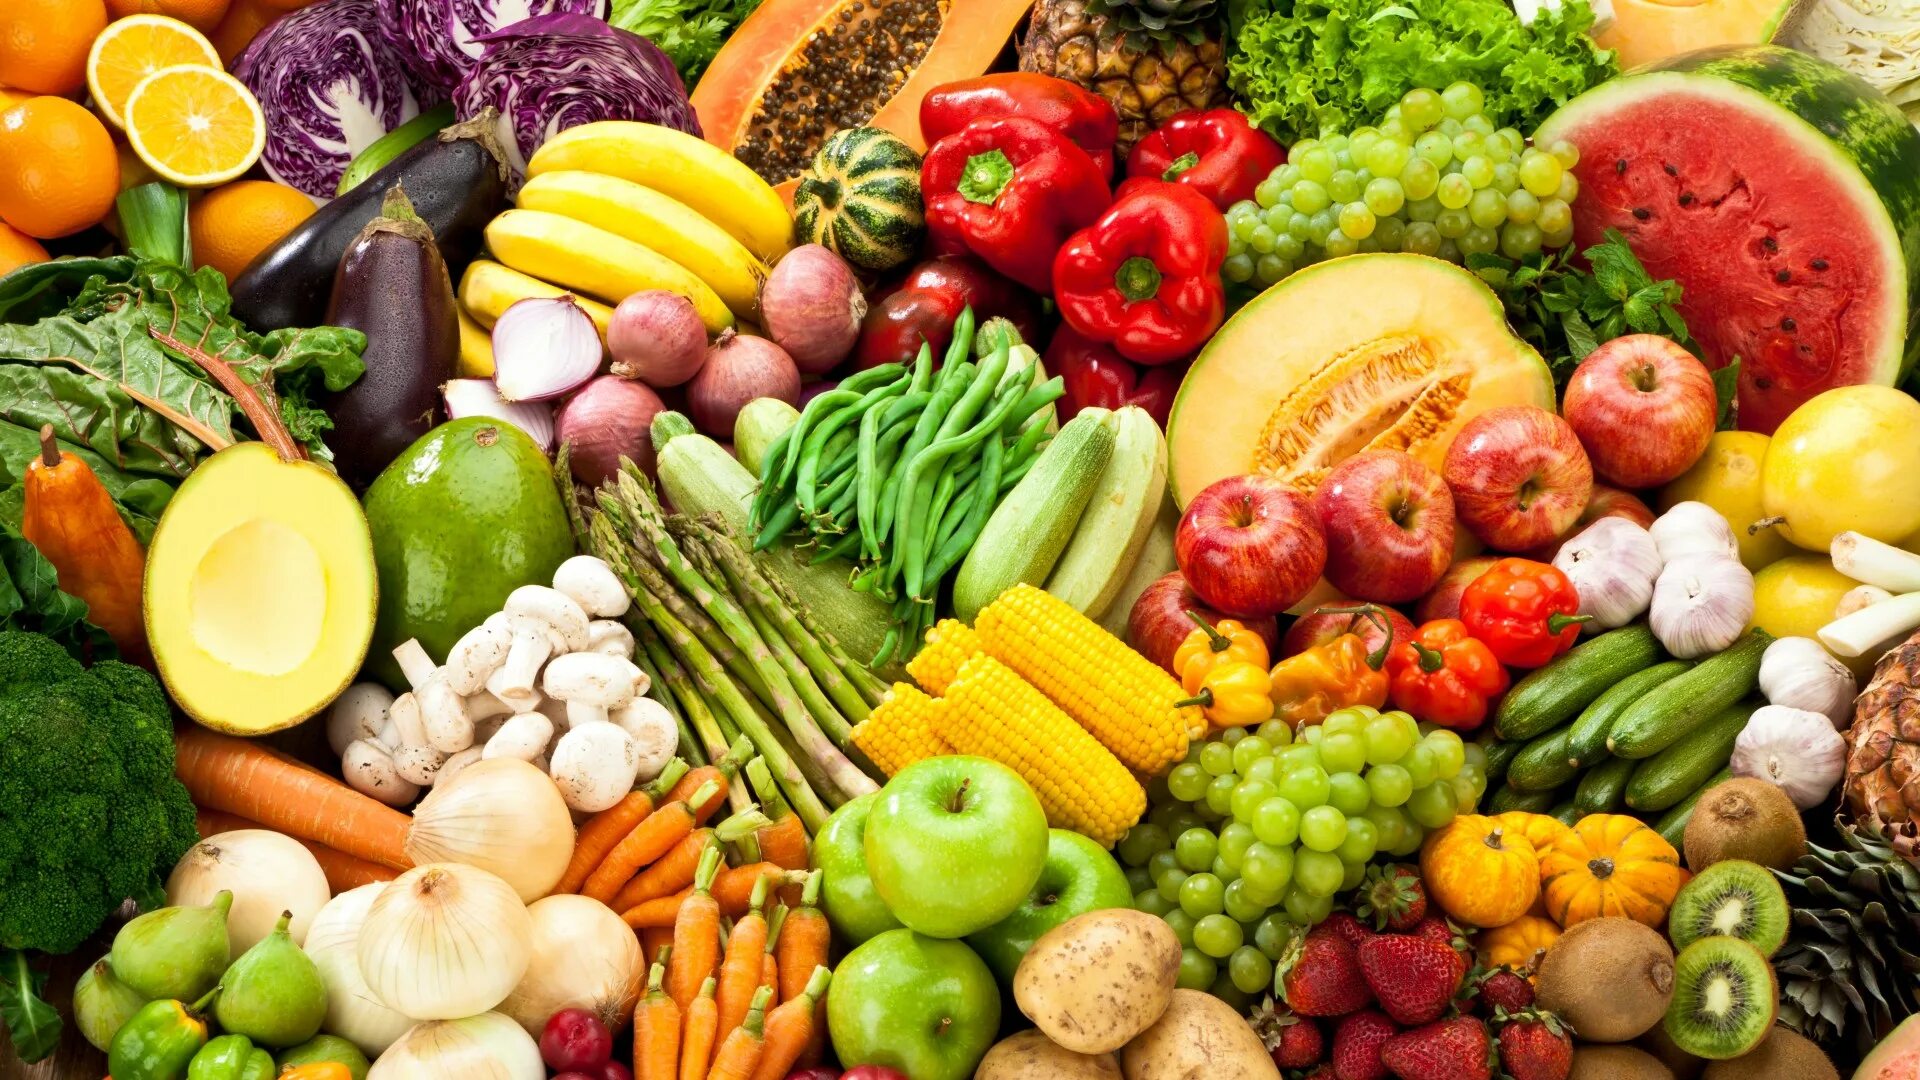 Овощи и фрукты. Здоровое питание. Продукты овощи. Растительная пища. The vegetables were fresh